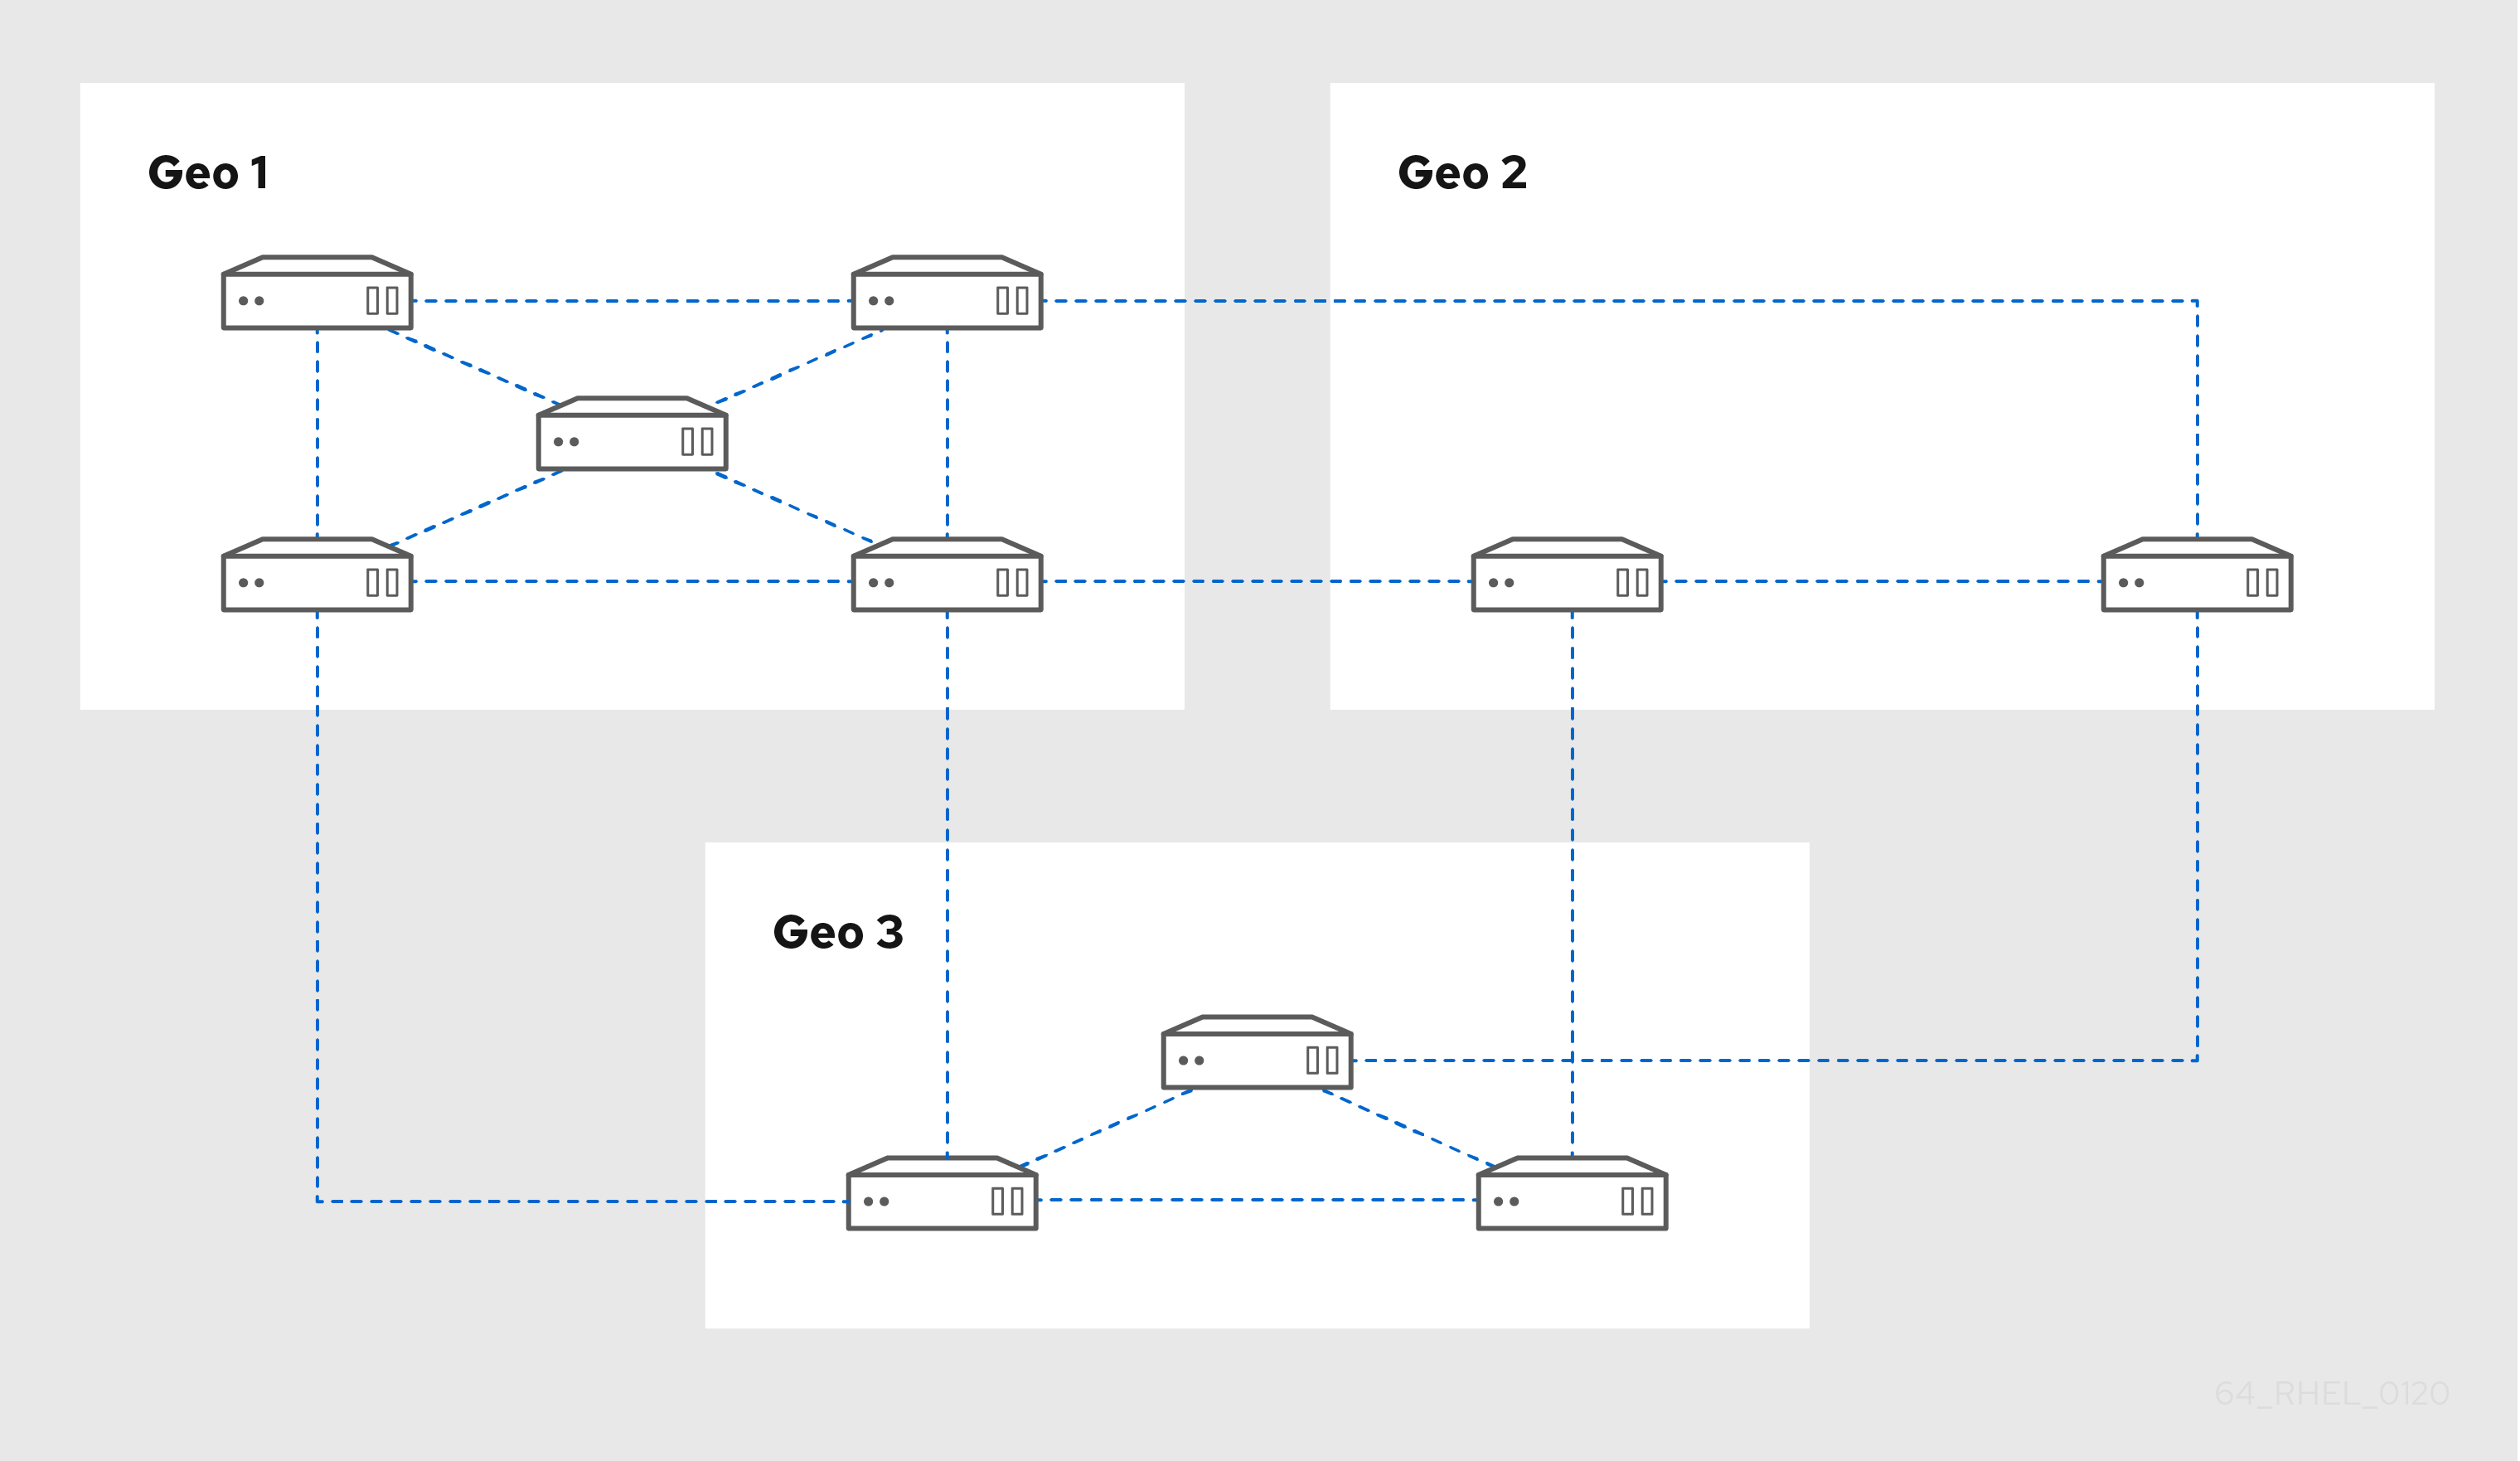 3 つのデータセンターの図: Geo 1 には、相互に接続された 5 つのサーバーがあります。Geo 2 には、互いに接続された 2 つのサーバーがあります。Geo 3 には、三角形状に接続された 3 つのサーバーがあります。各 Geo の 2 つのサーバーが、次の Geo の 2 つのサーバーに接続しています。